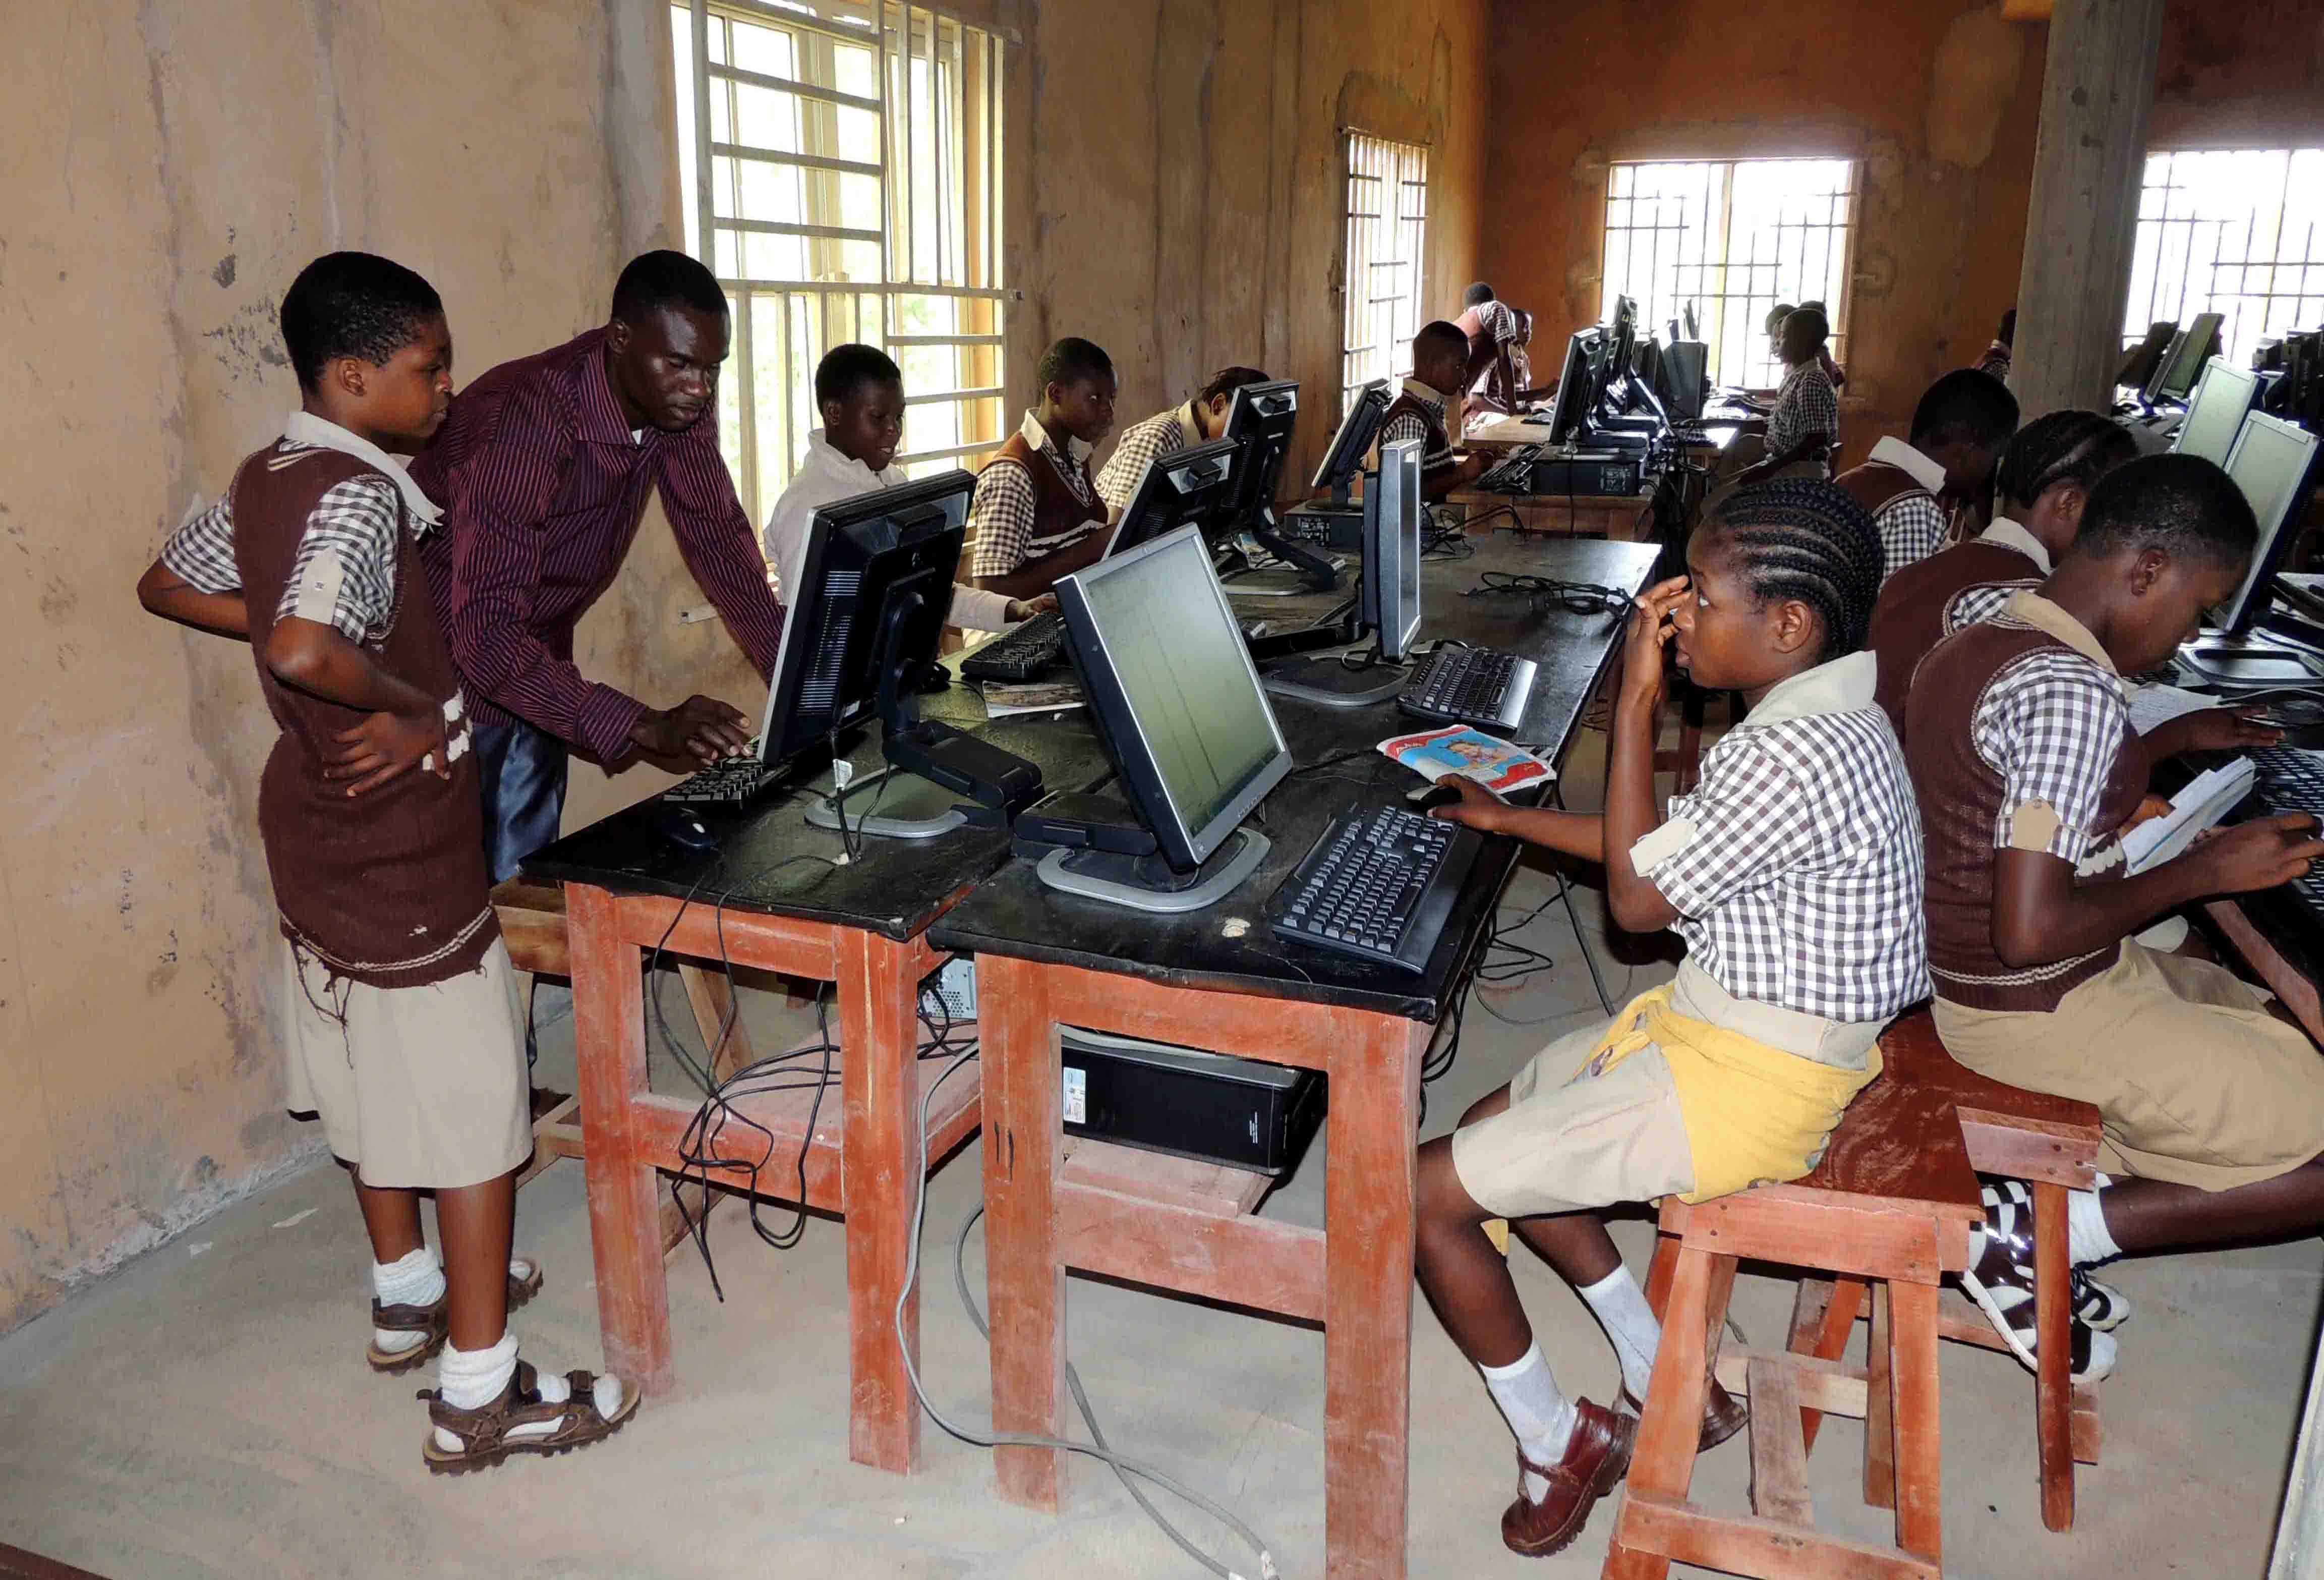 Fertigstellungsarbeiten sind voll im Gange in der Holy Trinity School - Bildungsprojekt in Nigeria